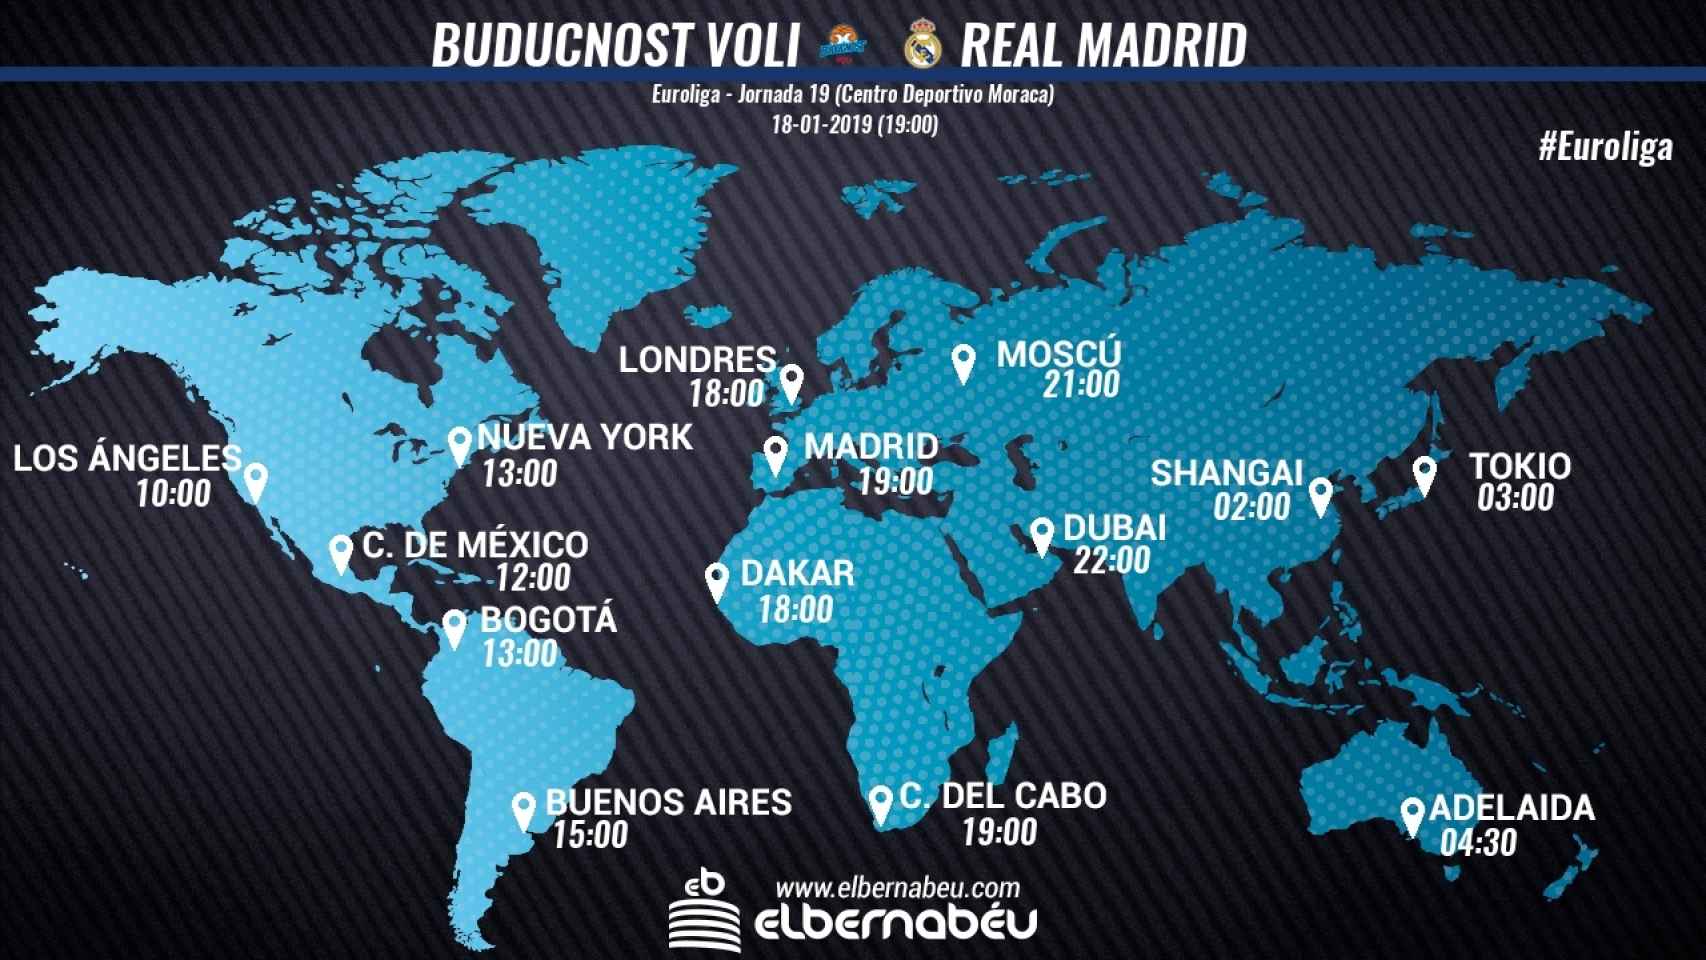 Horario Buducnost Voli - Real Madrid